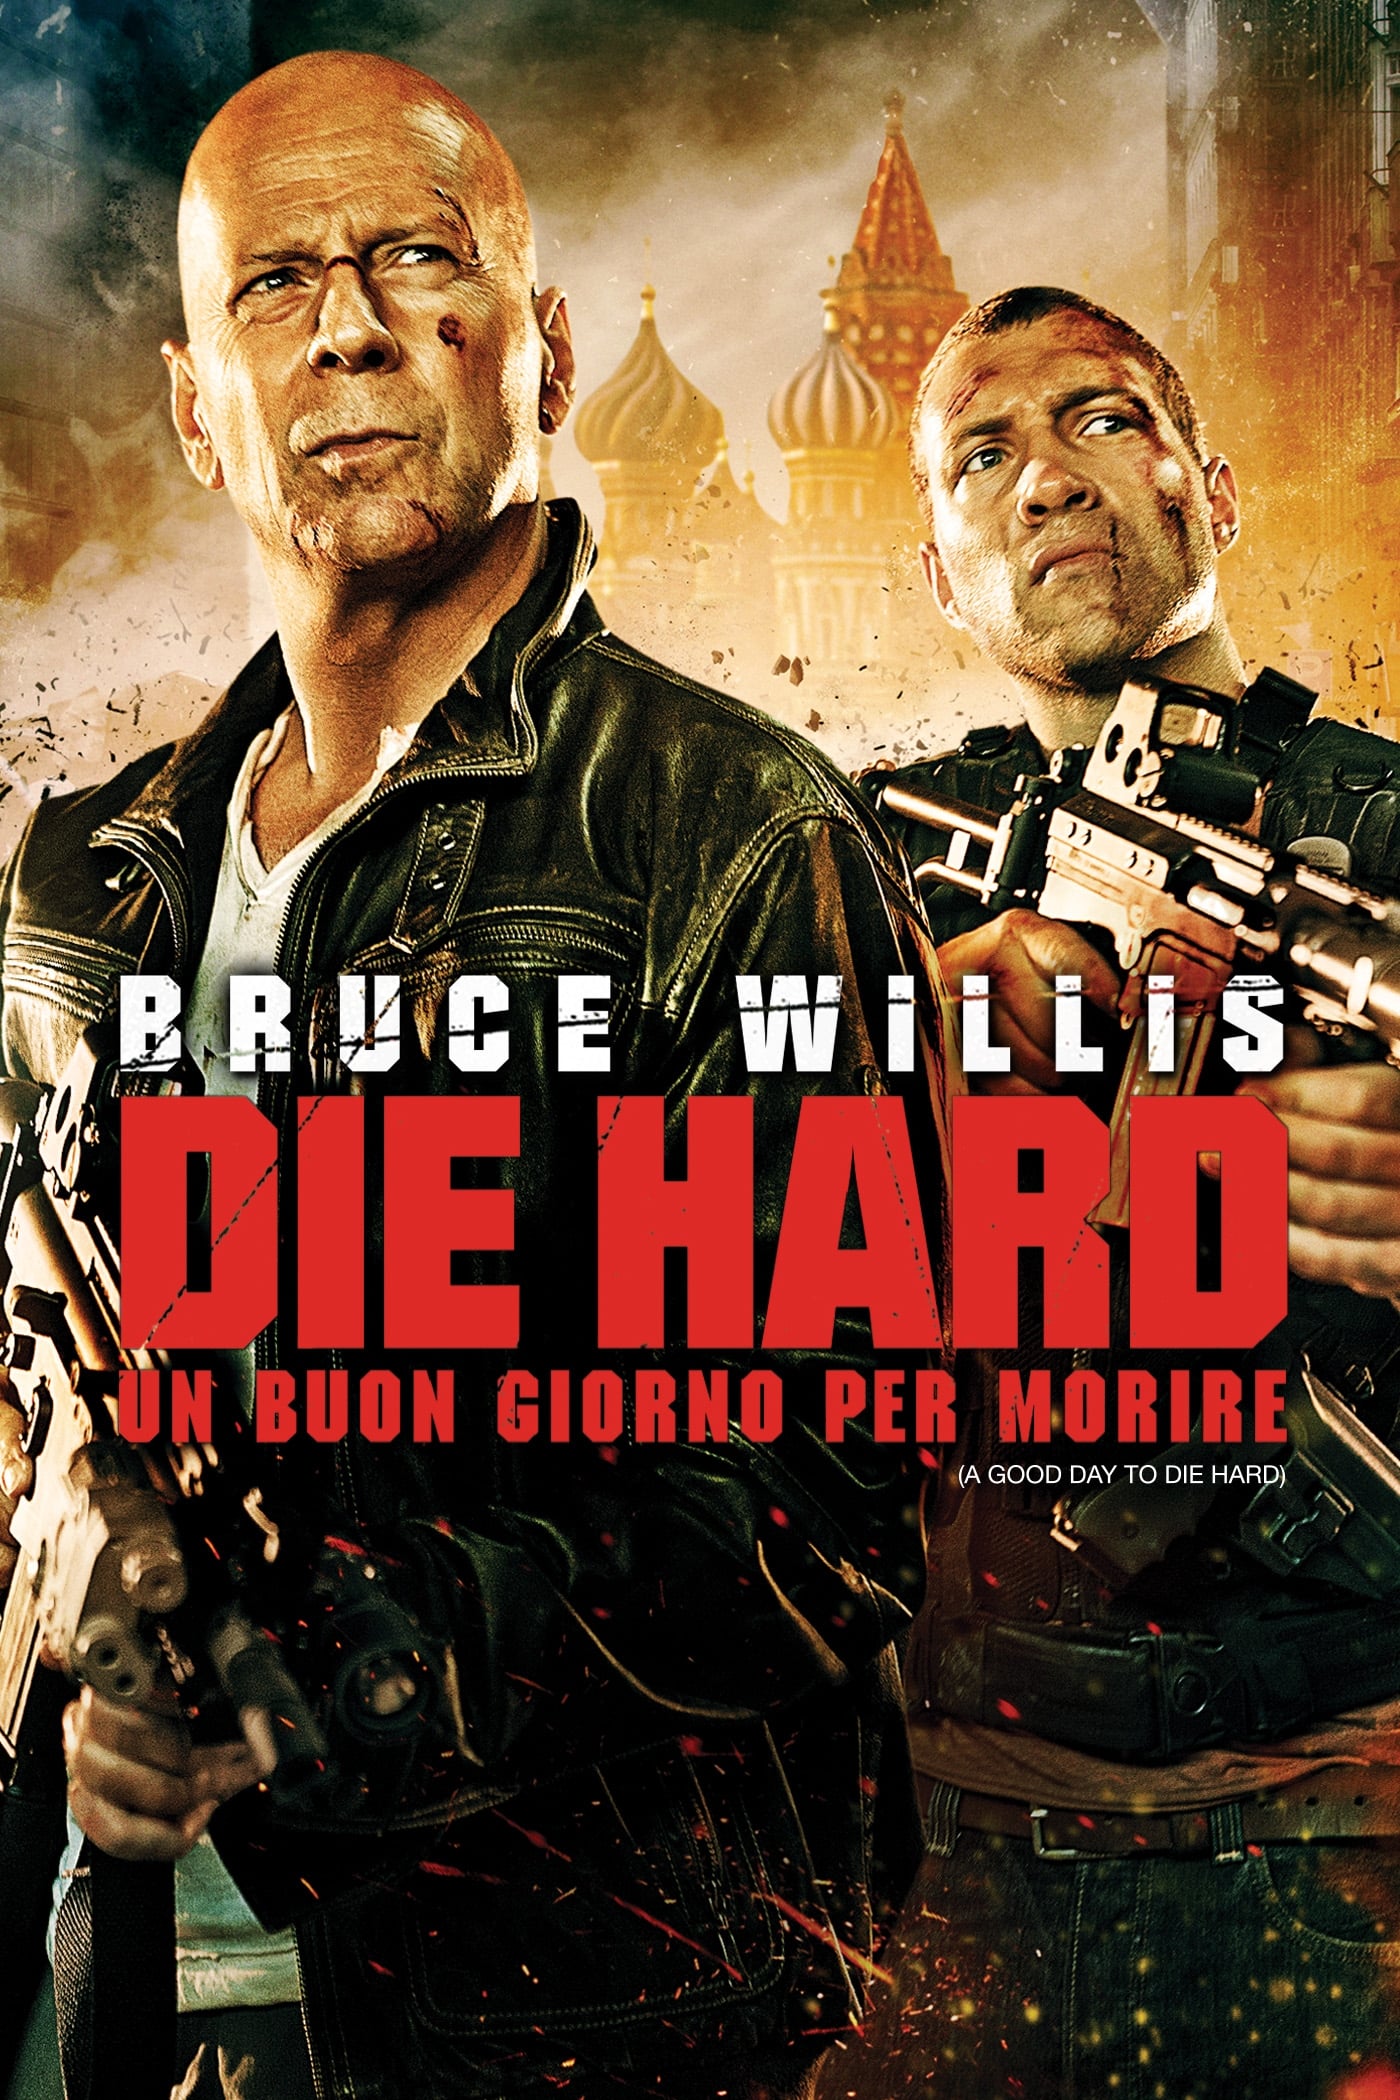 Die Hard – Un buon giorno per morire [HD] (2013)